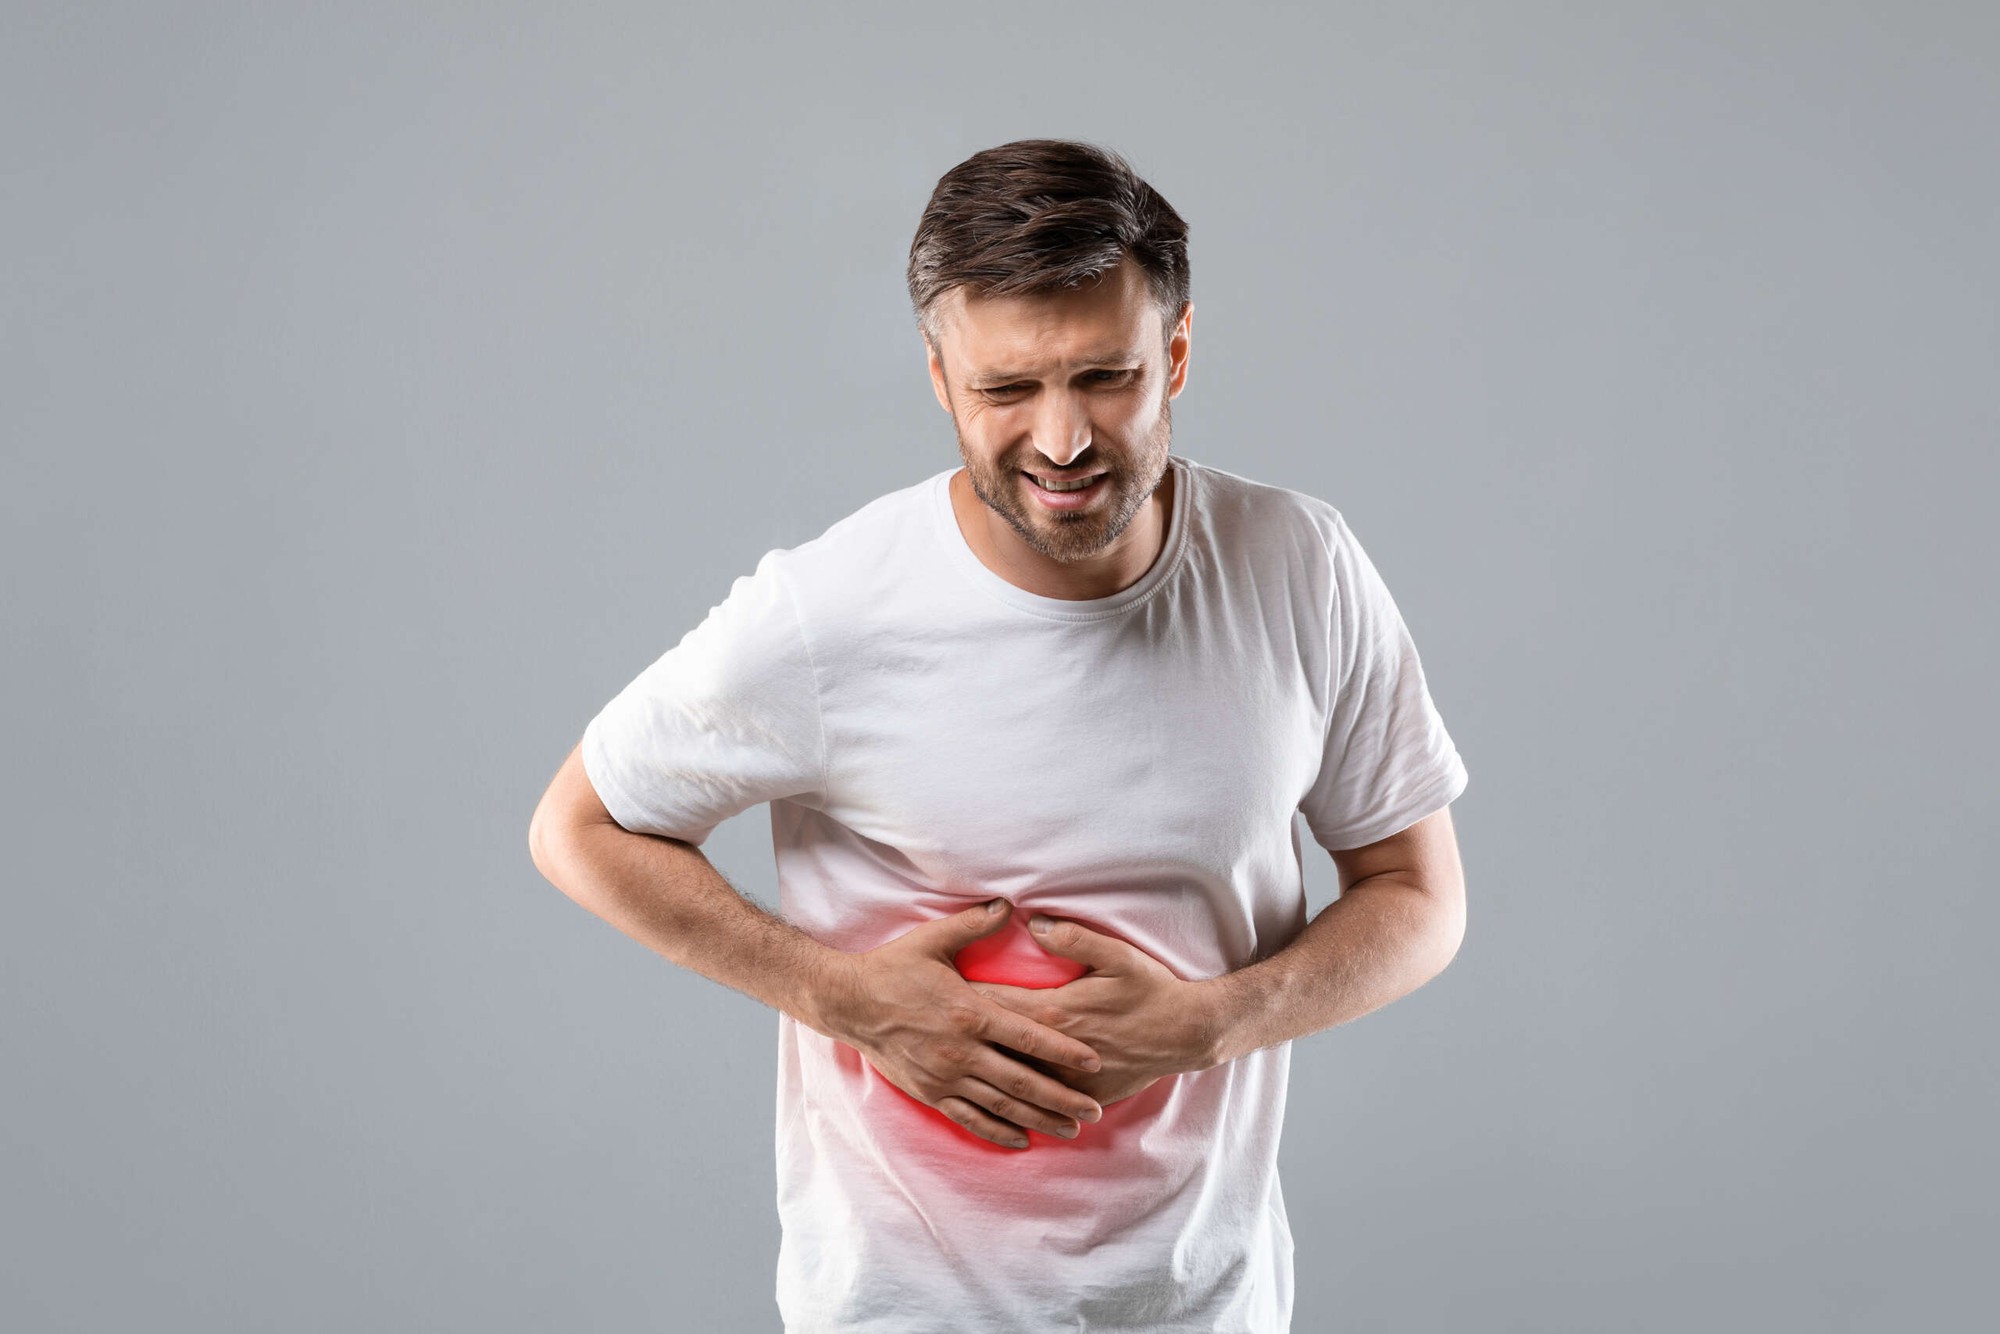 Cơn đau xuất hiện ở 1 vị trí trên cơ thể cảnh báo mỡ thừa tích tụ trong gan, rất dễ bị bỏ qua- Ảnh 2.